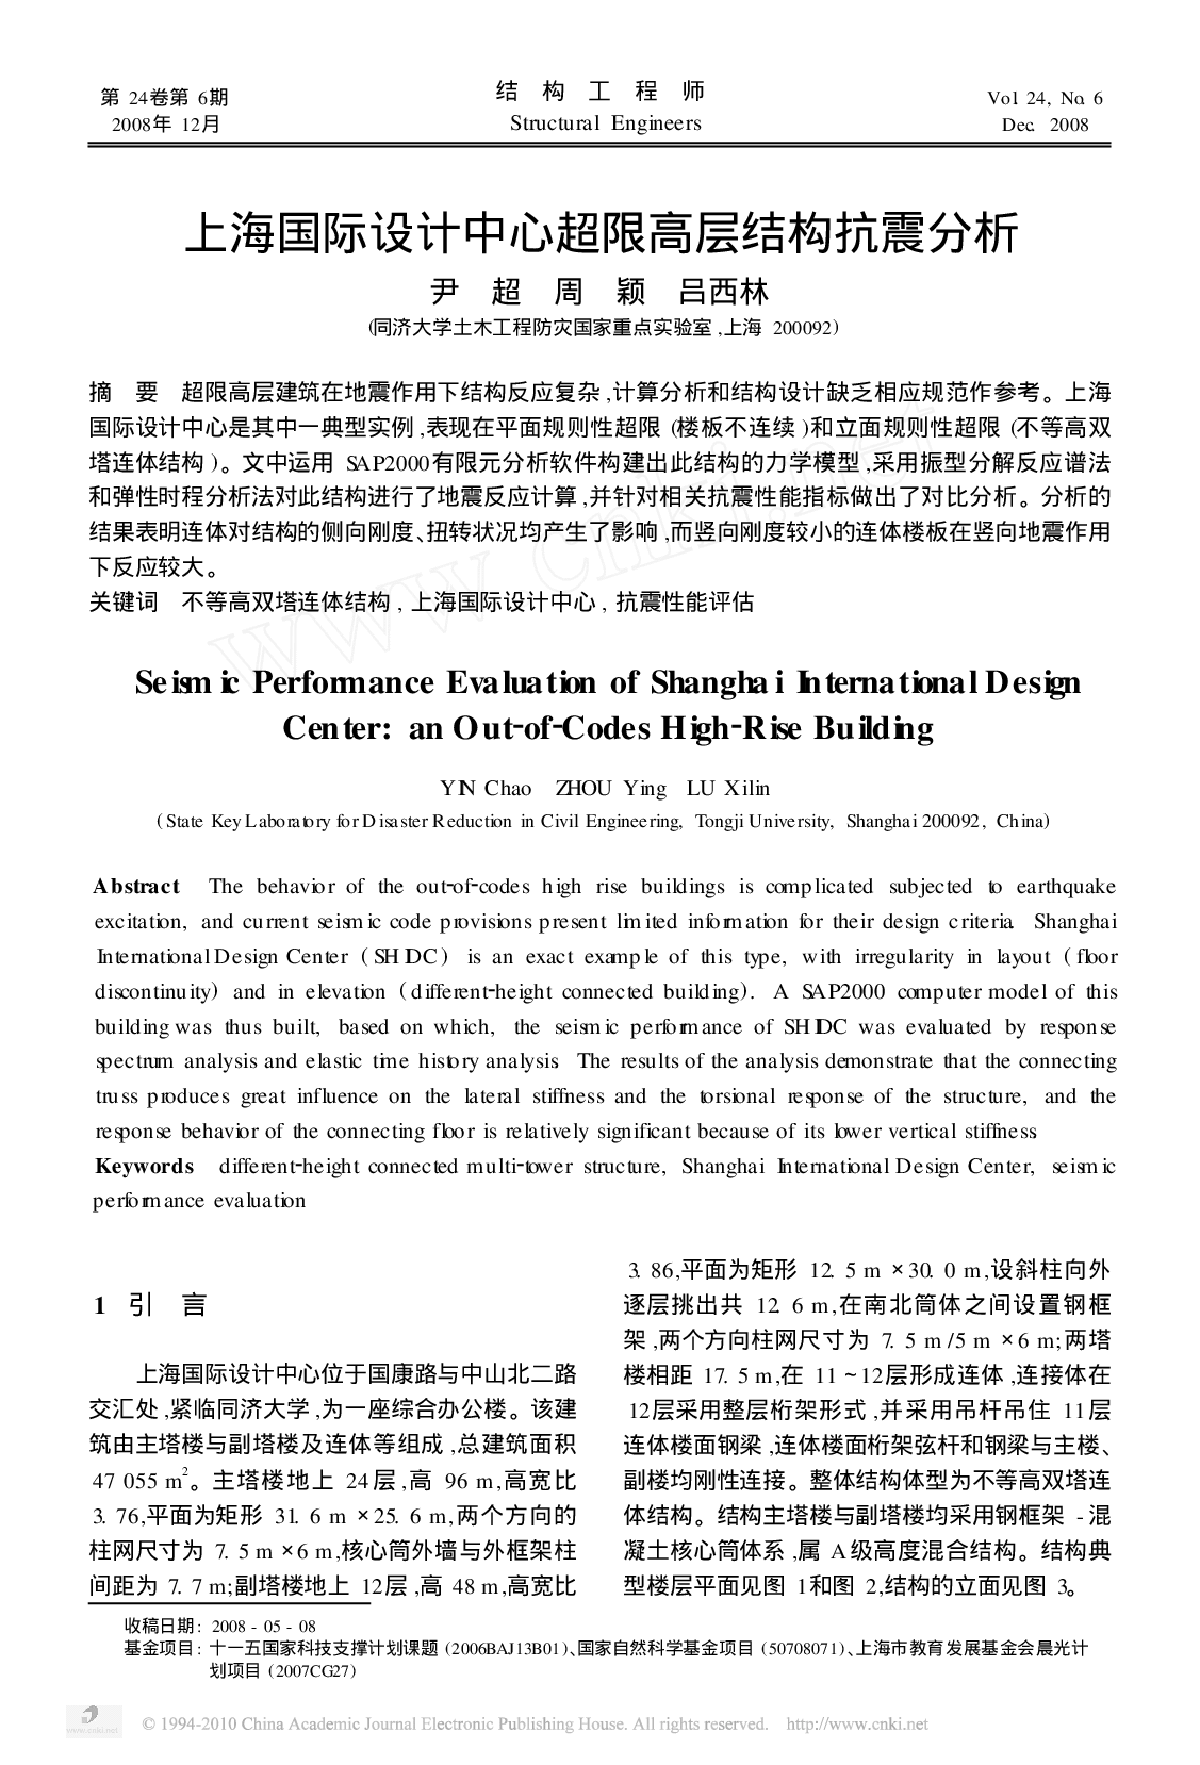 上海国际设计中心超限高层结构抗震分析